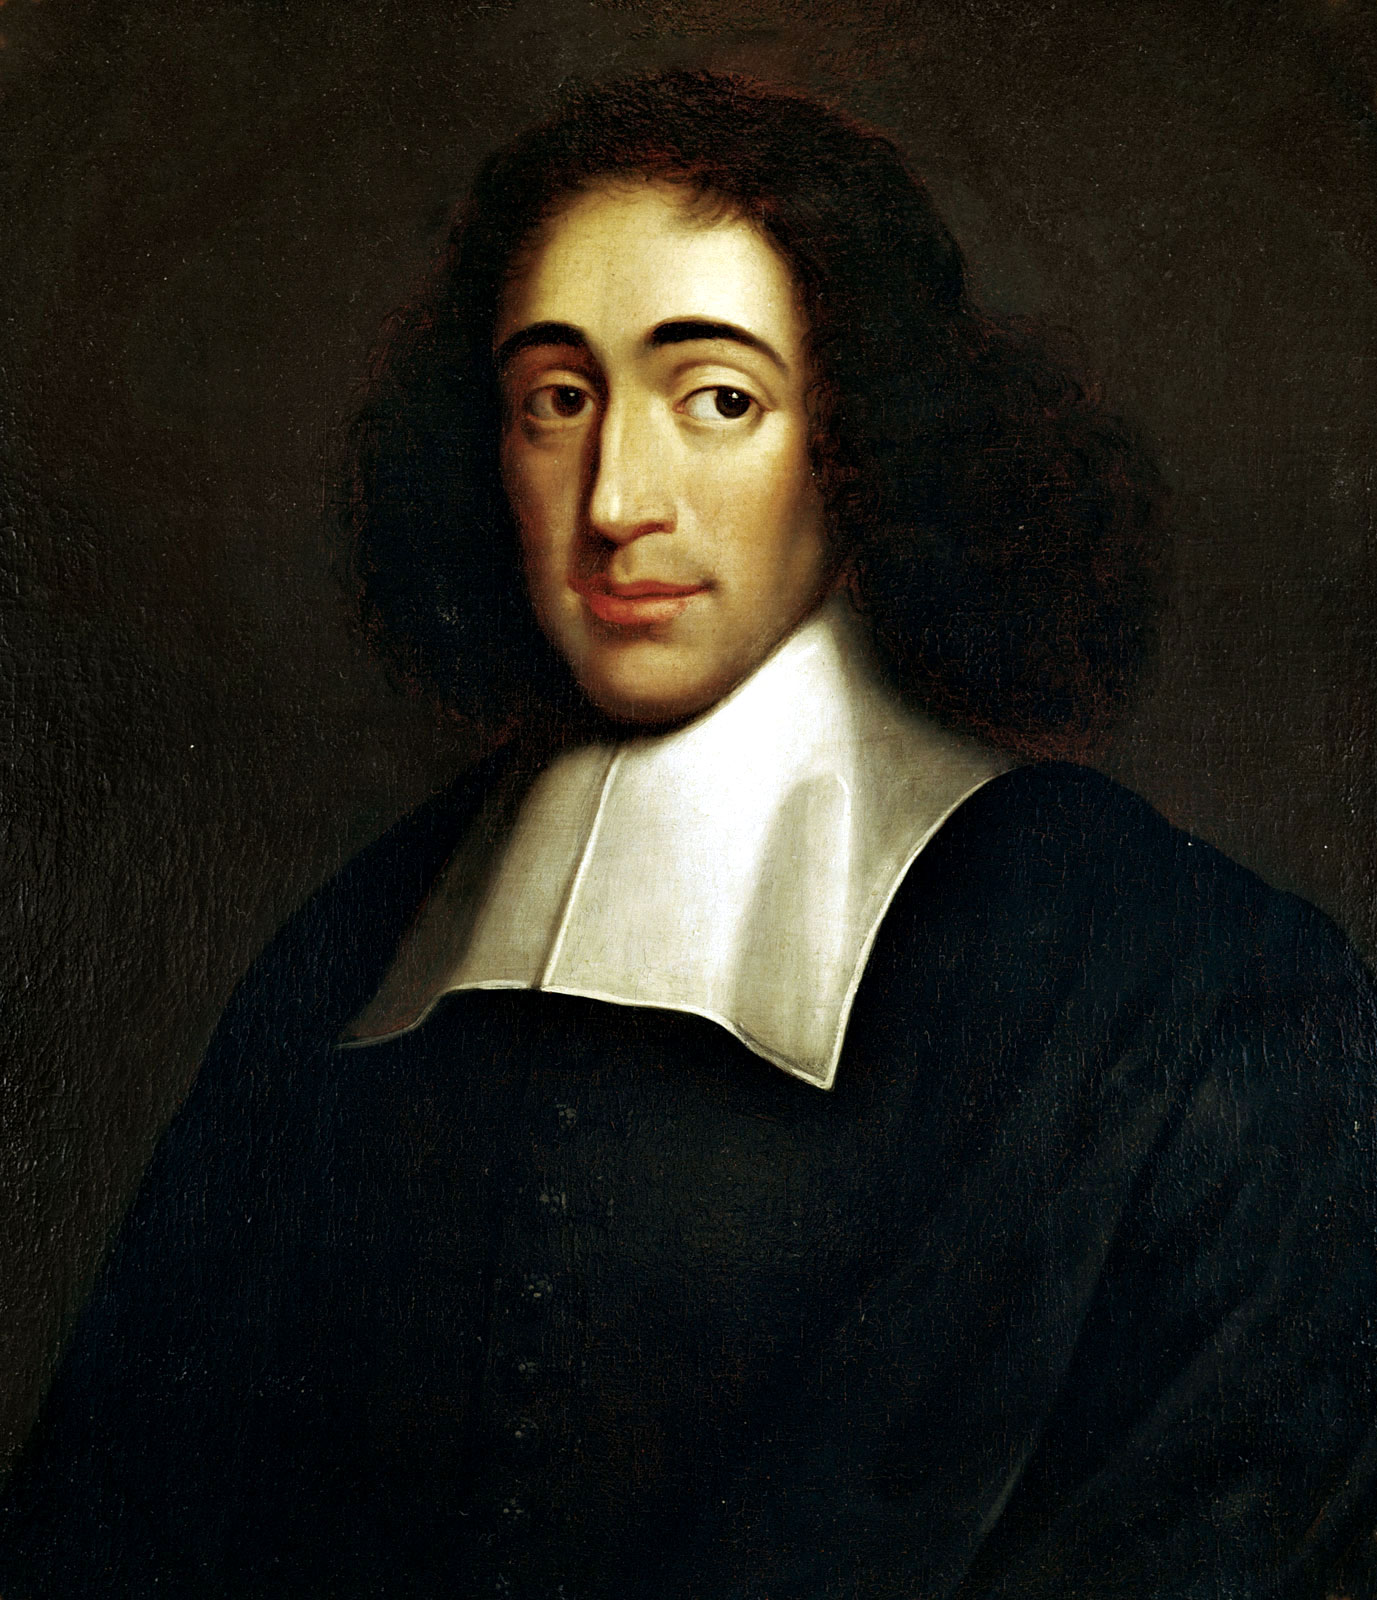 Retrato de Spinoza en 1665 ilustrando filósofos que han influido en la educación